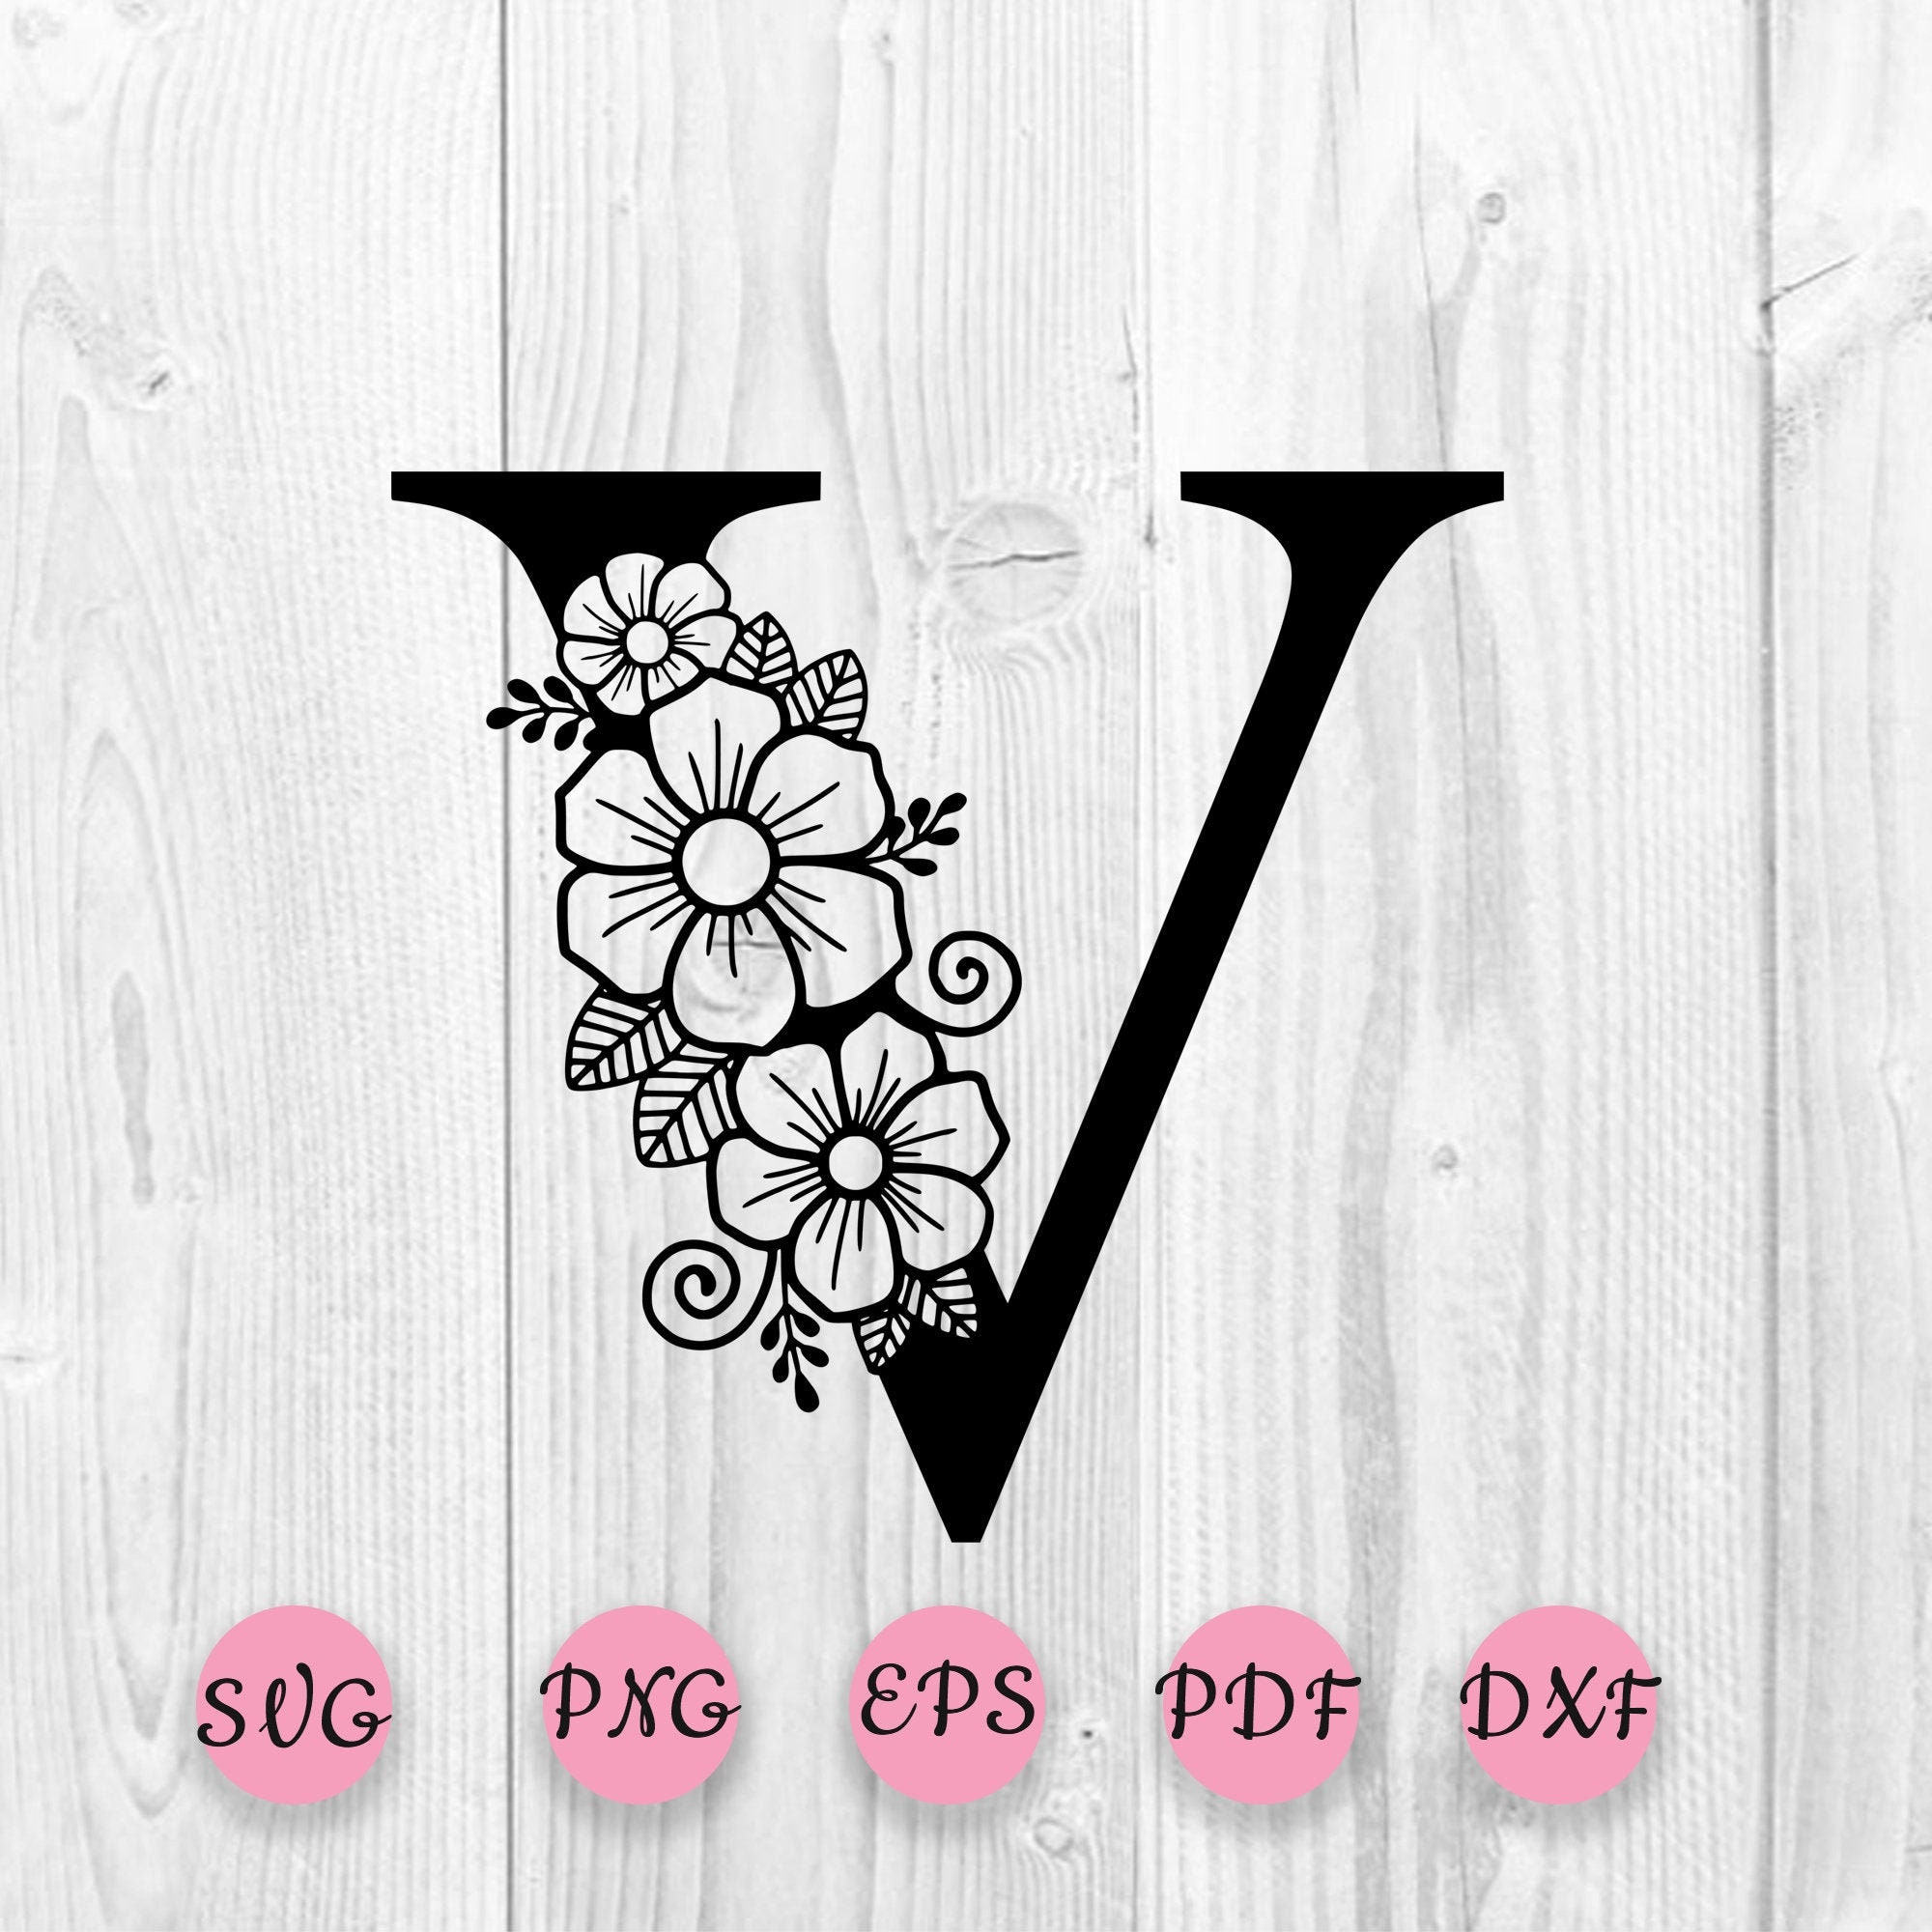 Vintage Floral Monogram Letter V, Initials, Botanical Art Print Logo Stock  Illustration